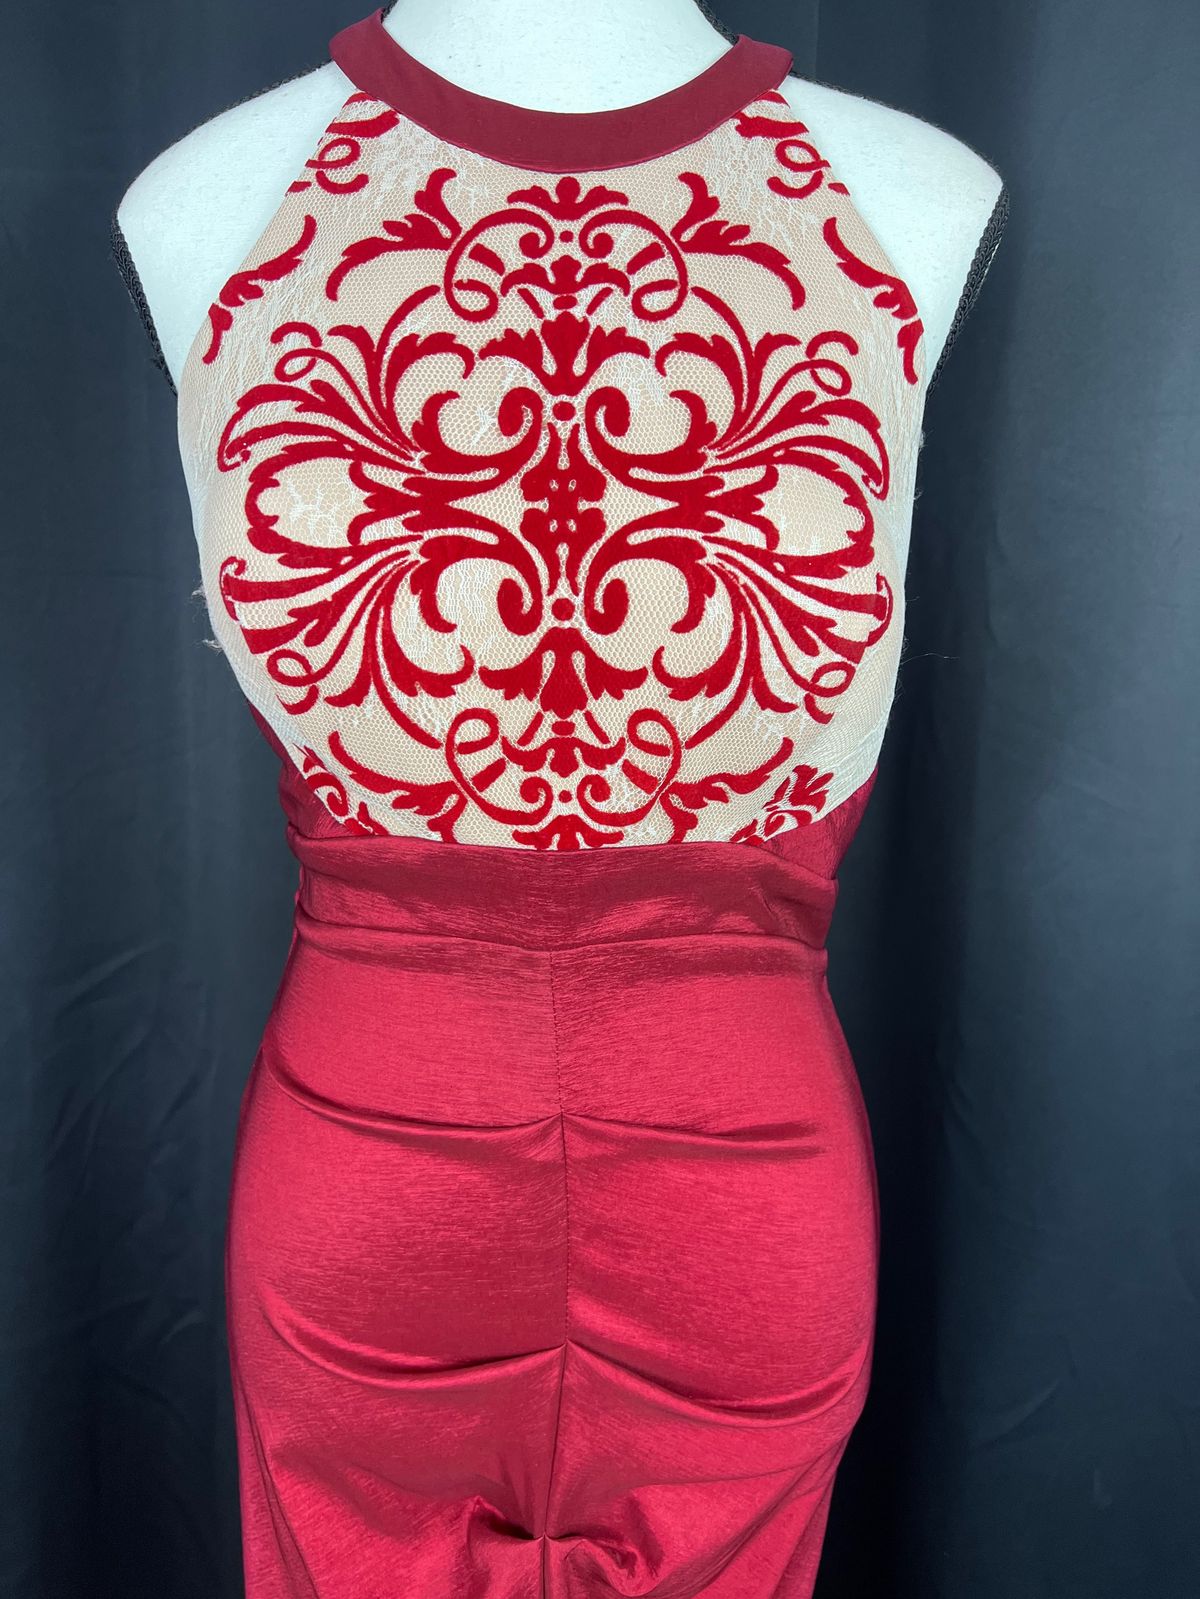 Blondie Nites Size 8 Prom Halter Red Mermaid Dress on Queenly